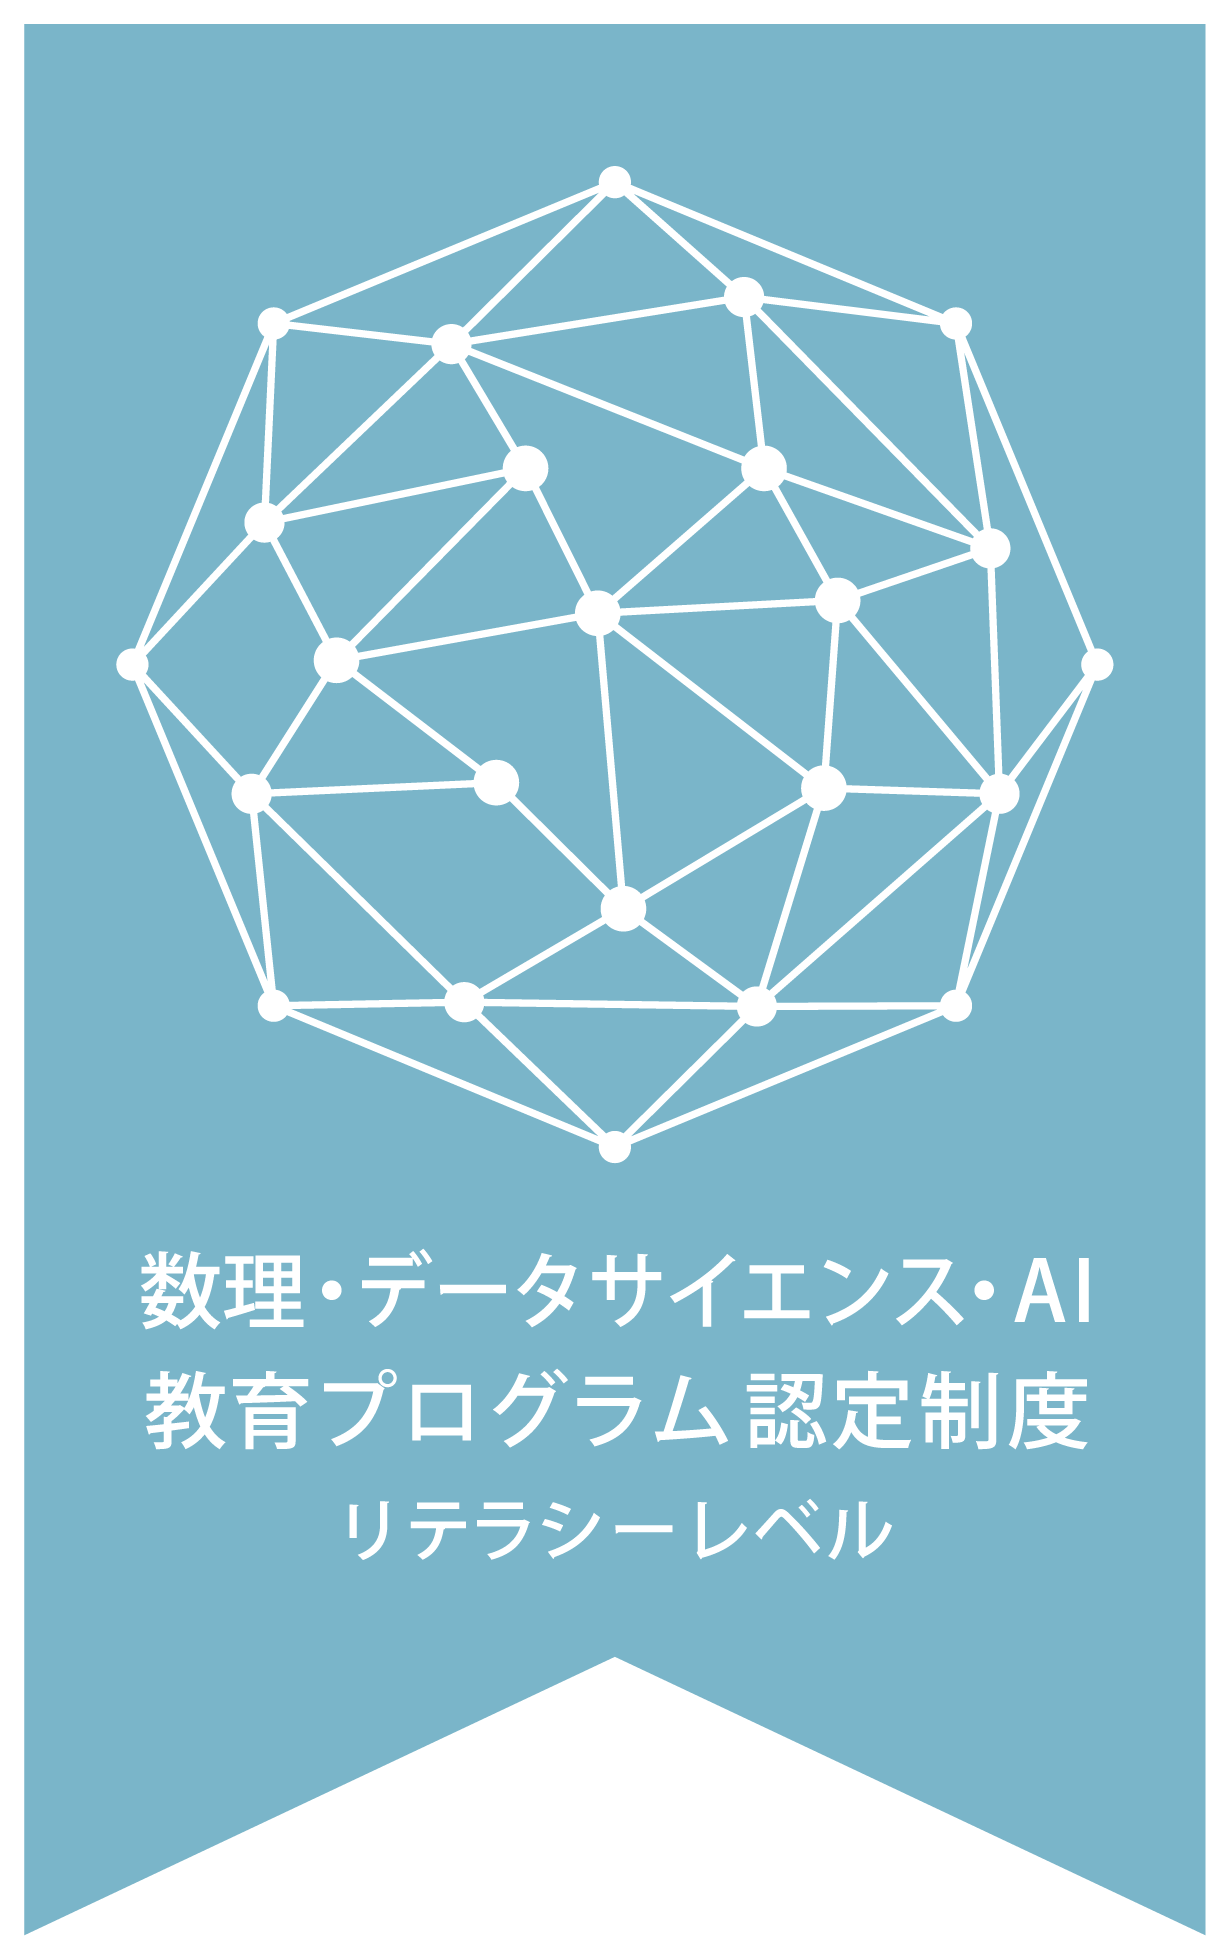 数理・データサイエンス・AI教育プログラム認定制度（リテラシーレベル）ロゴ